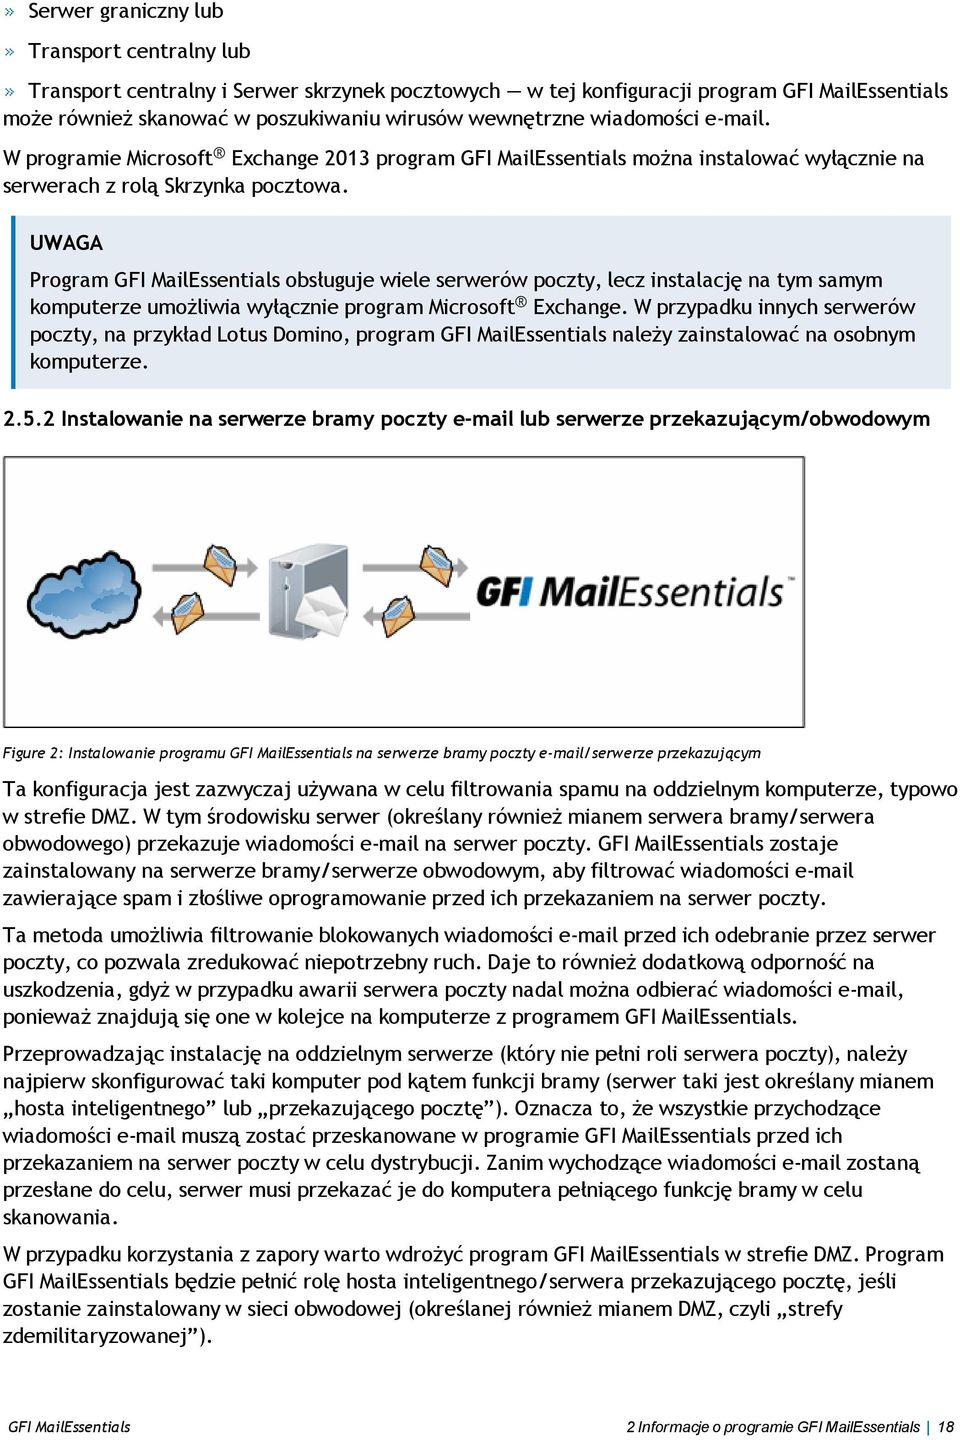 Program GFI MailEssentials obsługuje wiele serwerów poczty, lecz instalację na tym samym komputerze umożliwia wyłącznie program Microsoft Exchange.